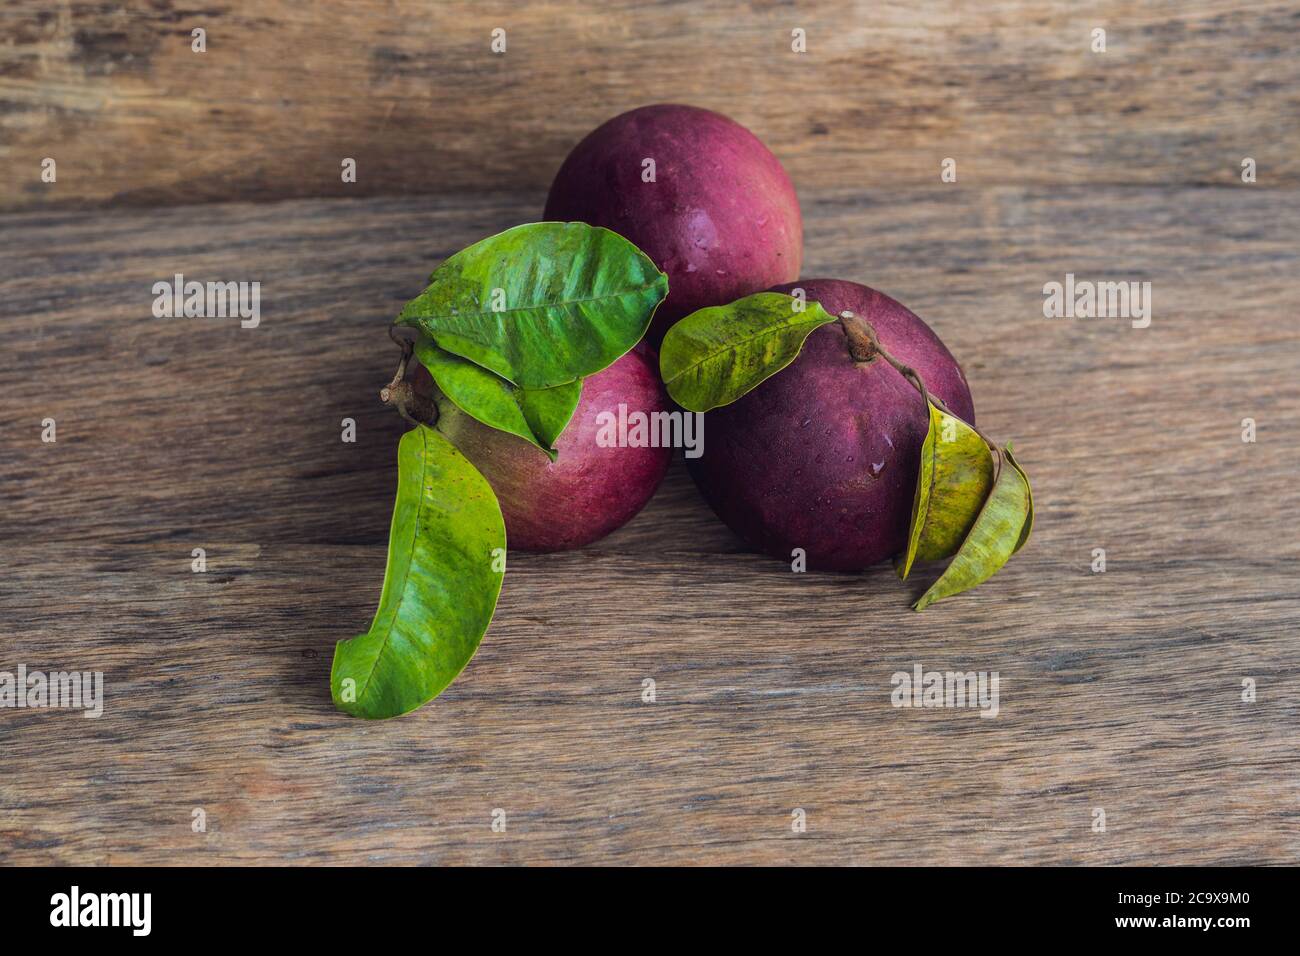 fresh Chrysophyllum cainito fruits on wood background Stock Photo